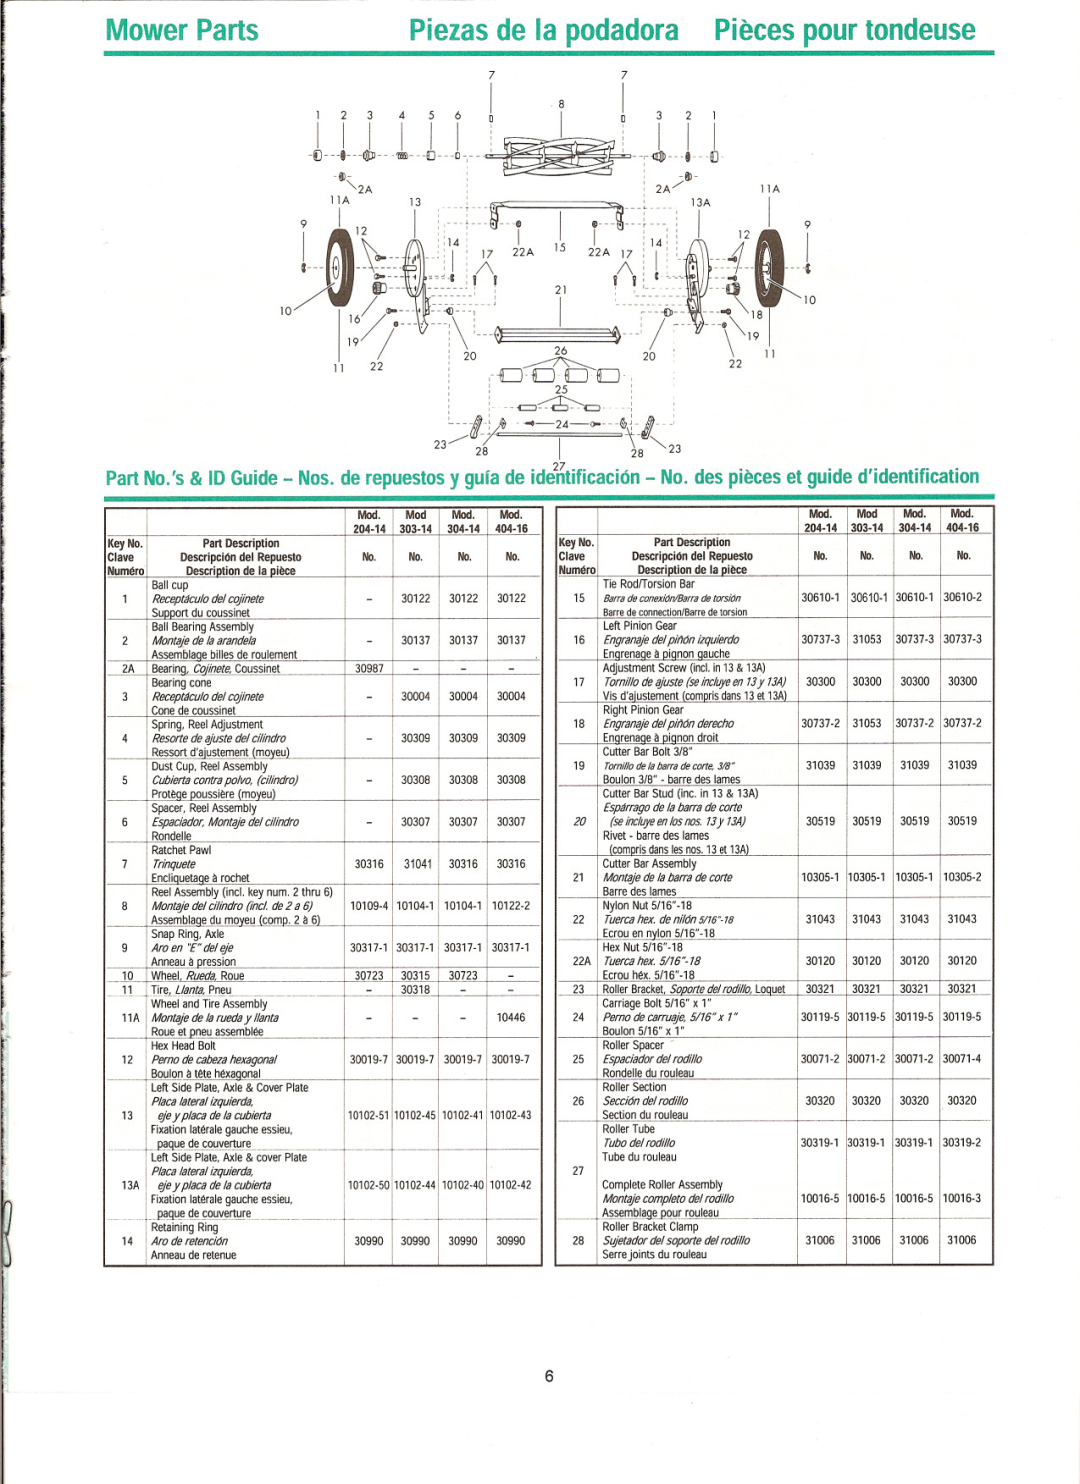 Great States 304-14 Mower Parts, Piezas de la podadora Pieces pour tondeuse, 1PR.mW, 30990, 30317-1, j.heel, Rueda, Clave 